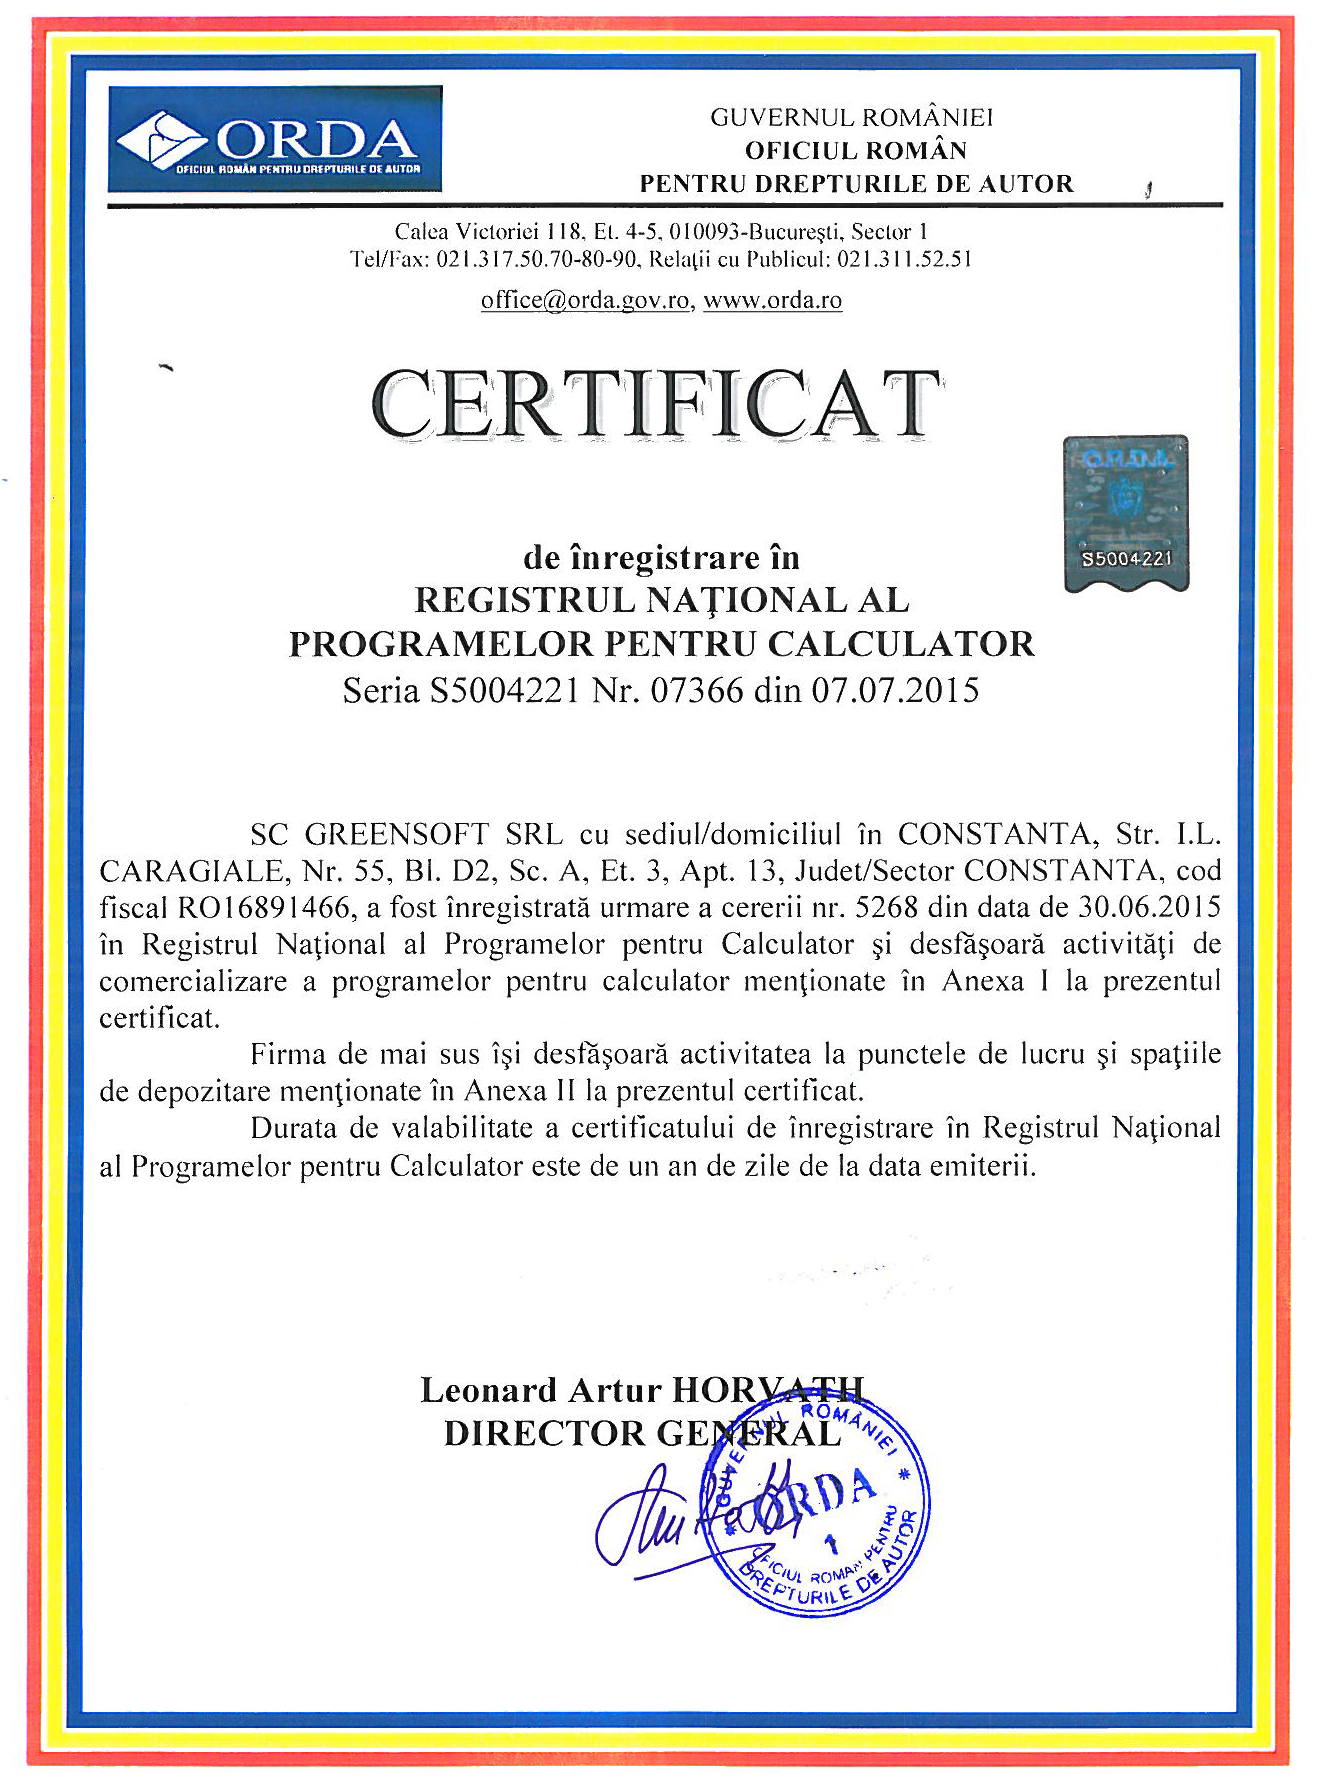 Definition fare penny Certificat ORDA de inregistrare in Registrul National al Programelor pentru  Calculator - GreenSoft Computers